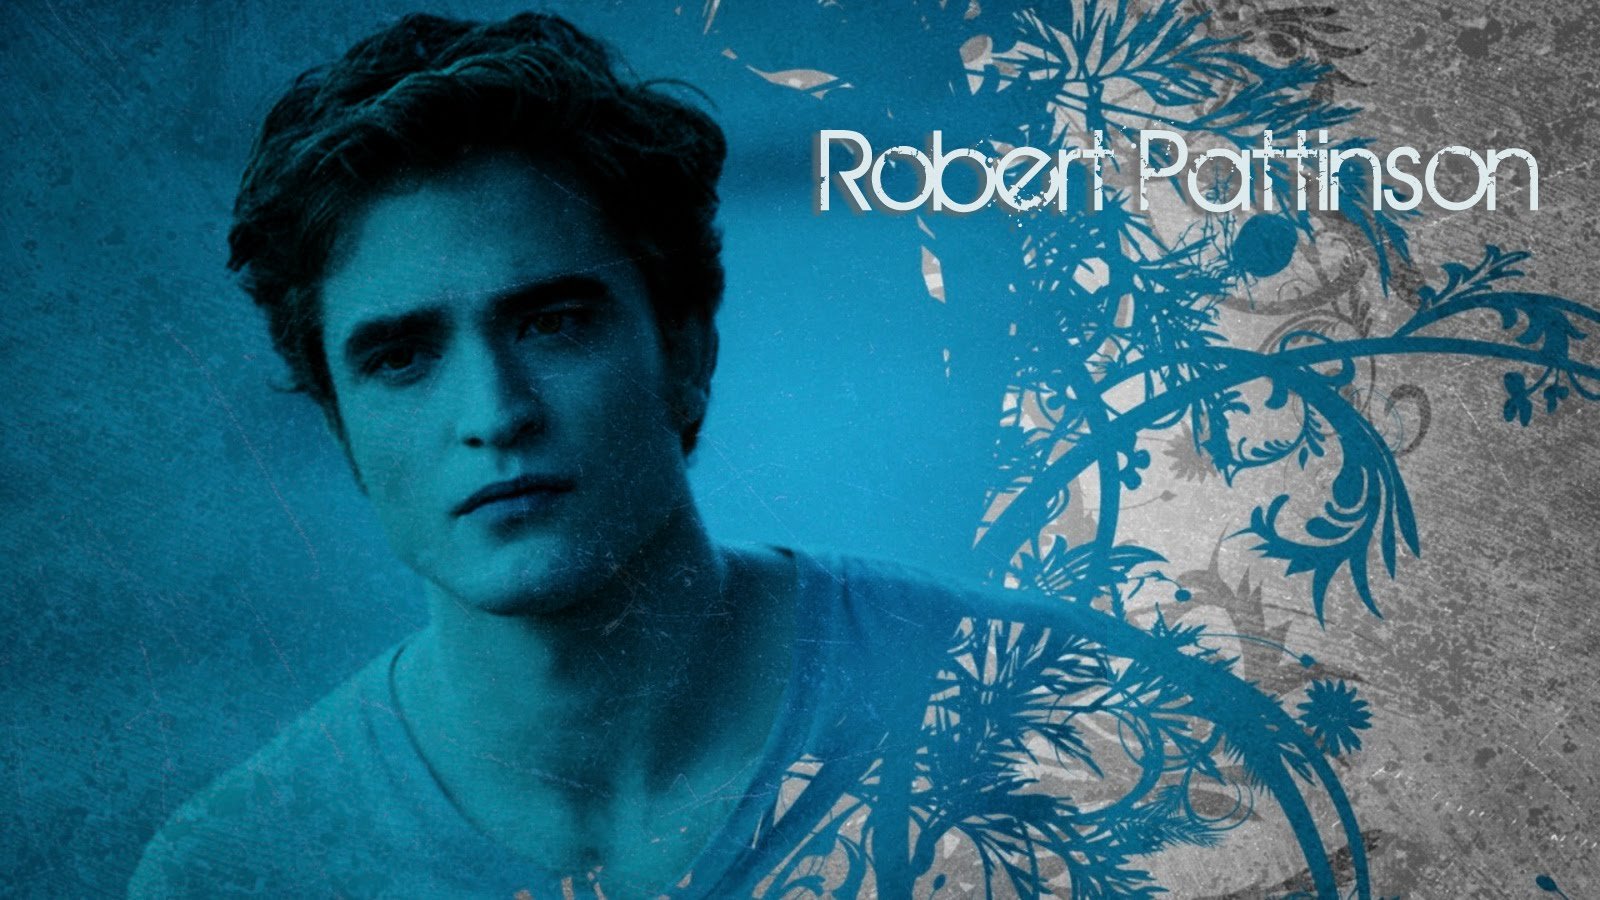 Robert Pattinson Desktop Wallpaper Edward Cullen The Unbuttoned